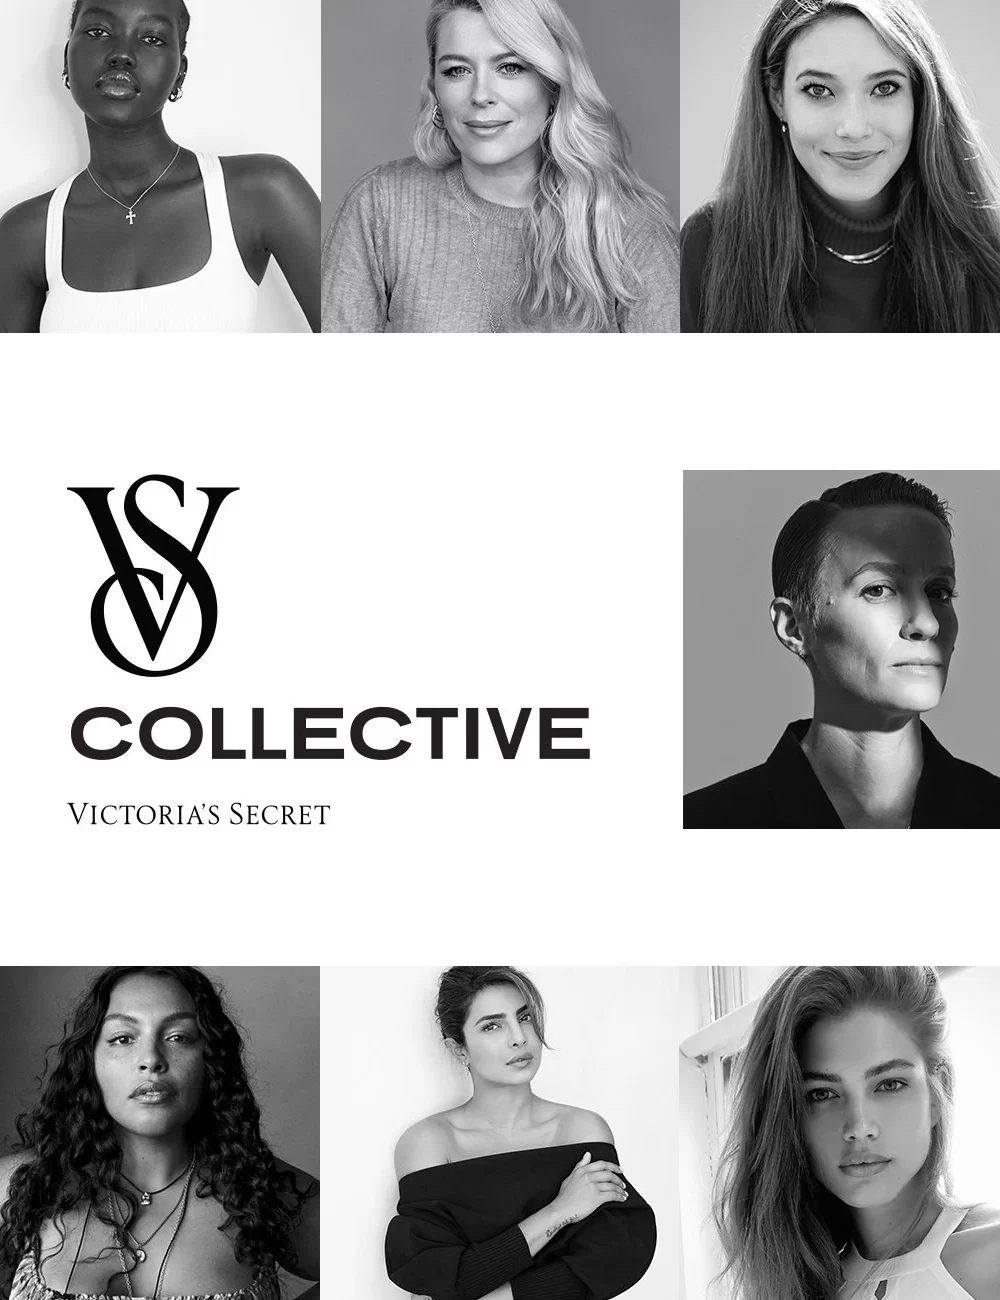 VS Collective - Victoria's Secret - Victoria's Secret - Victoria's Secret - Victoria's Secret - https://stealthelook.com.br